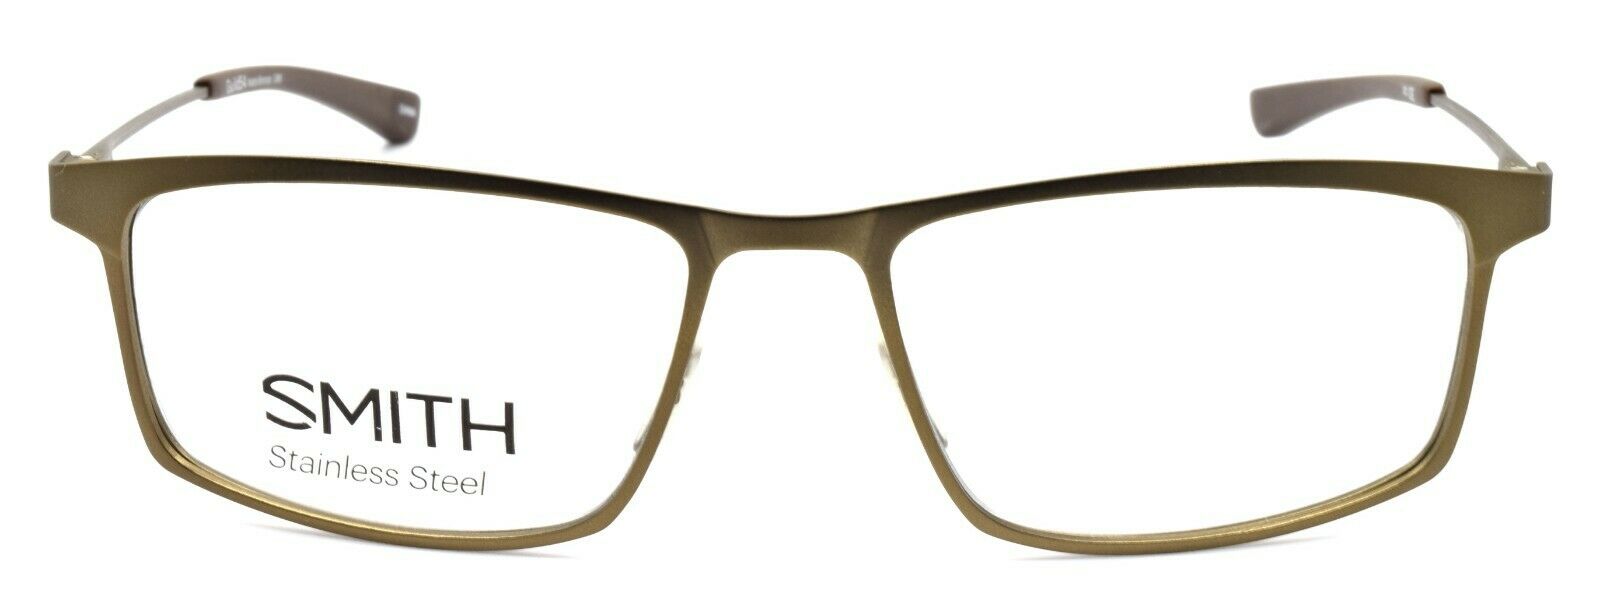 2-SMITH Guild54 GR8 Men's Eyeglasses Frames 54-17-140 Matte Bronze + CASE-762753295910-IKSpecs